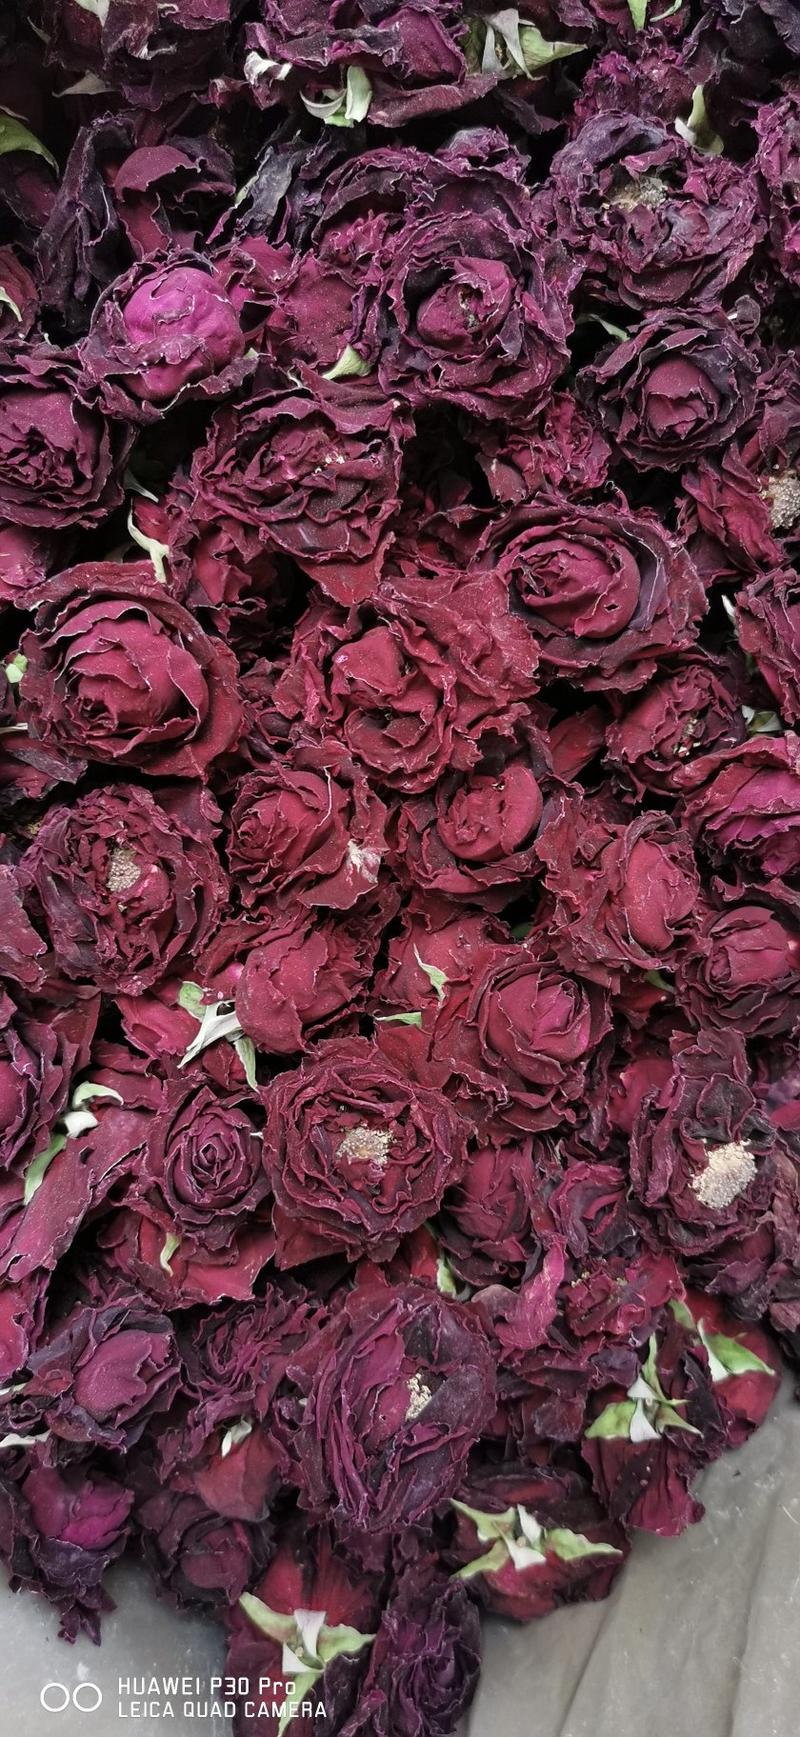 墨红玫瑰特有的浓花香。一朵就可以泡发一杯的情怀体验。